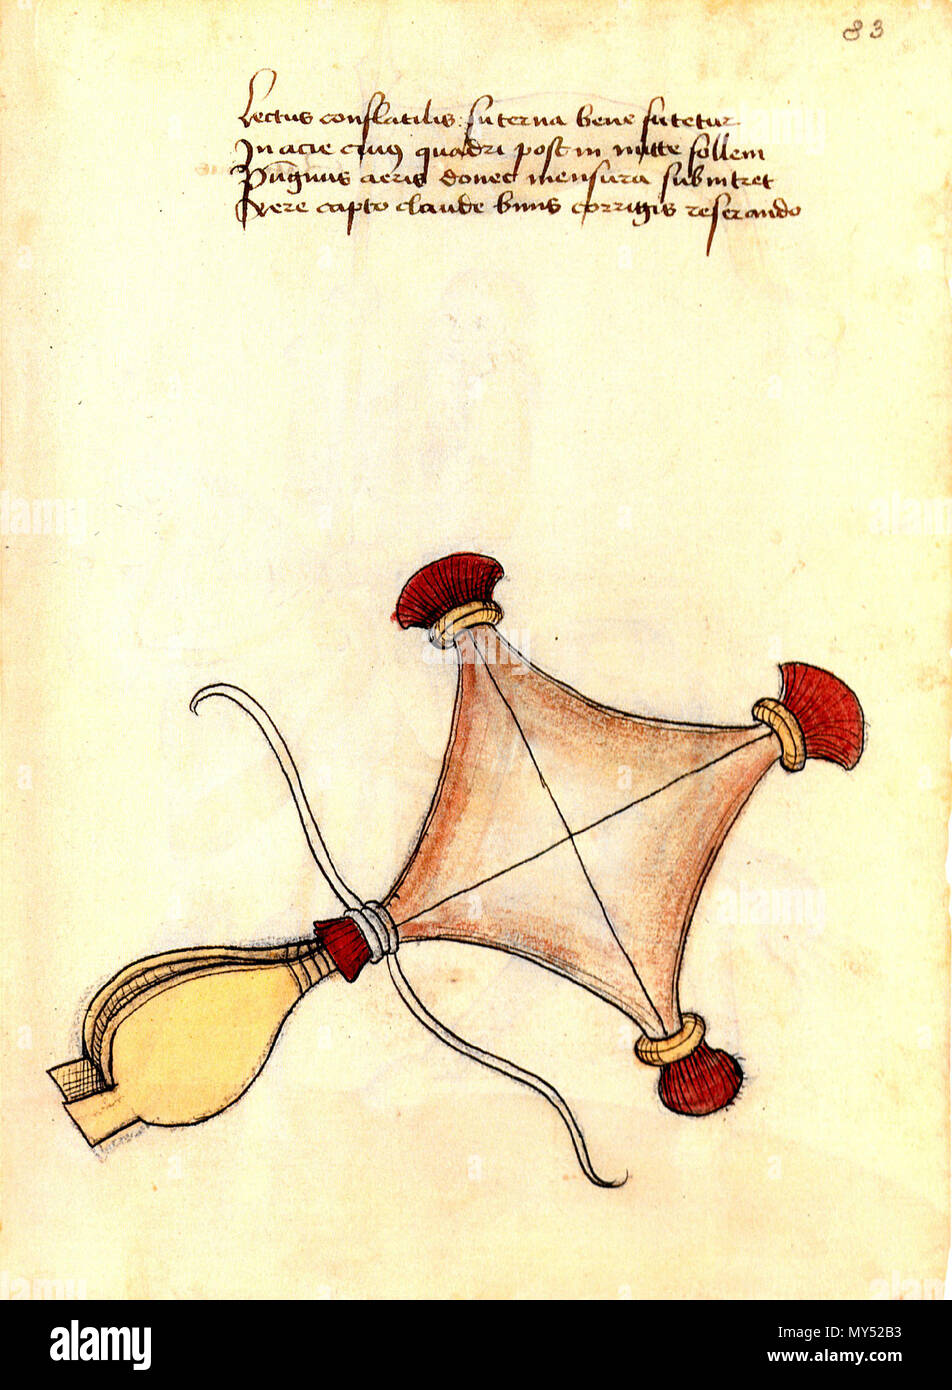 Deutsch: Englisch: Luftmatratze aufblasbare Matratze. 15. Jahrhundert.  Unbekannte Illustrator 300 Konrad Kyeser, Bellifortis, Clm30150, Tafel 16,  Blatt 83 r Stockfotografie - Alamy